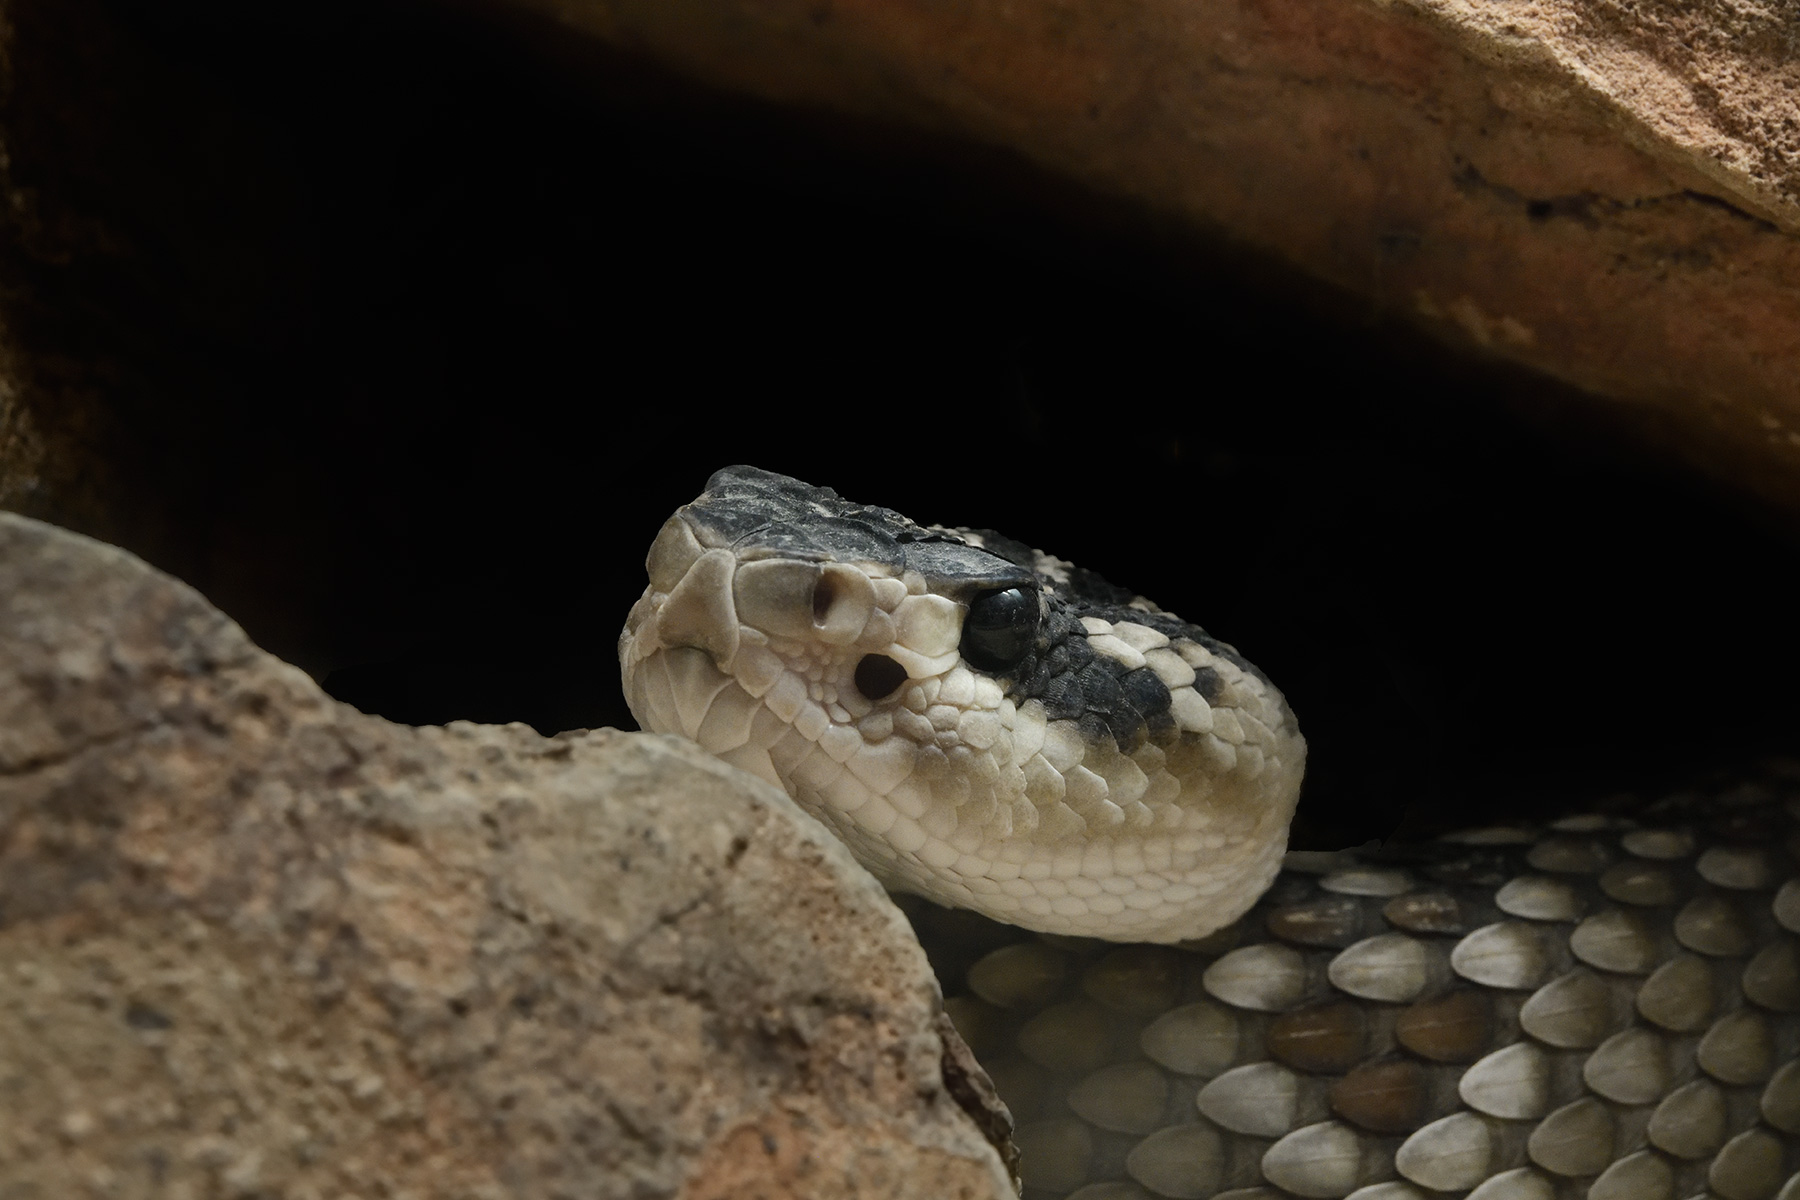 Désert de Sonora (Arizona, USA) - Serpent à sonnette (rattlesnake) avec tête posée sur un rocher